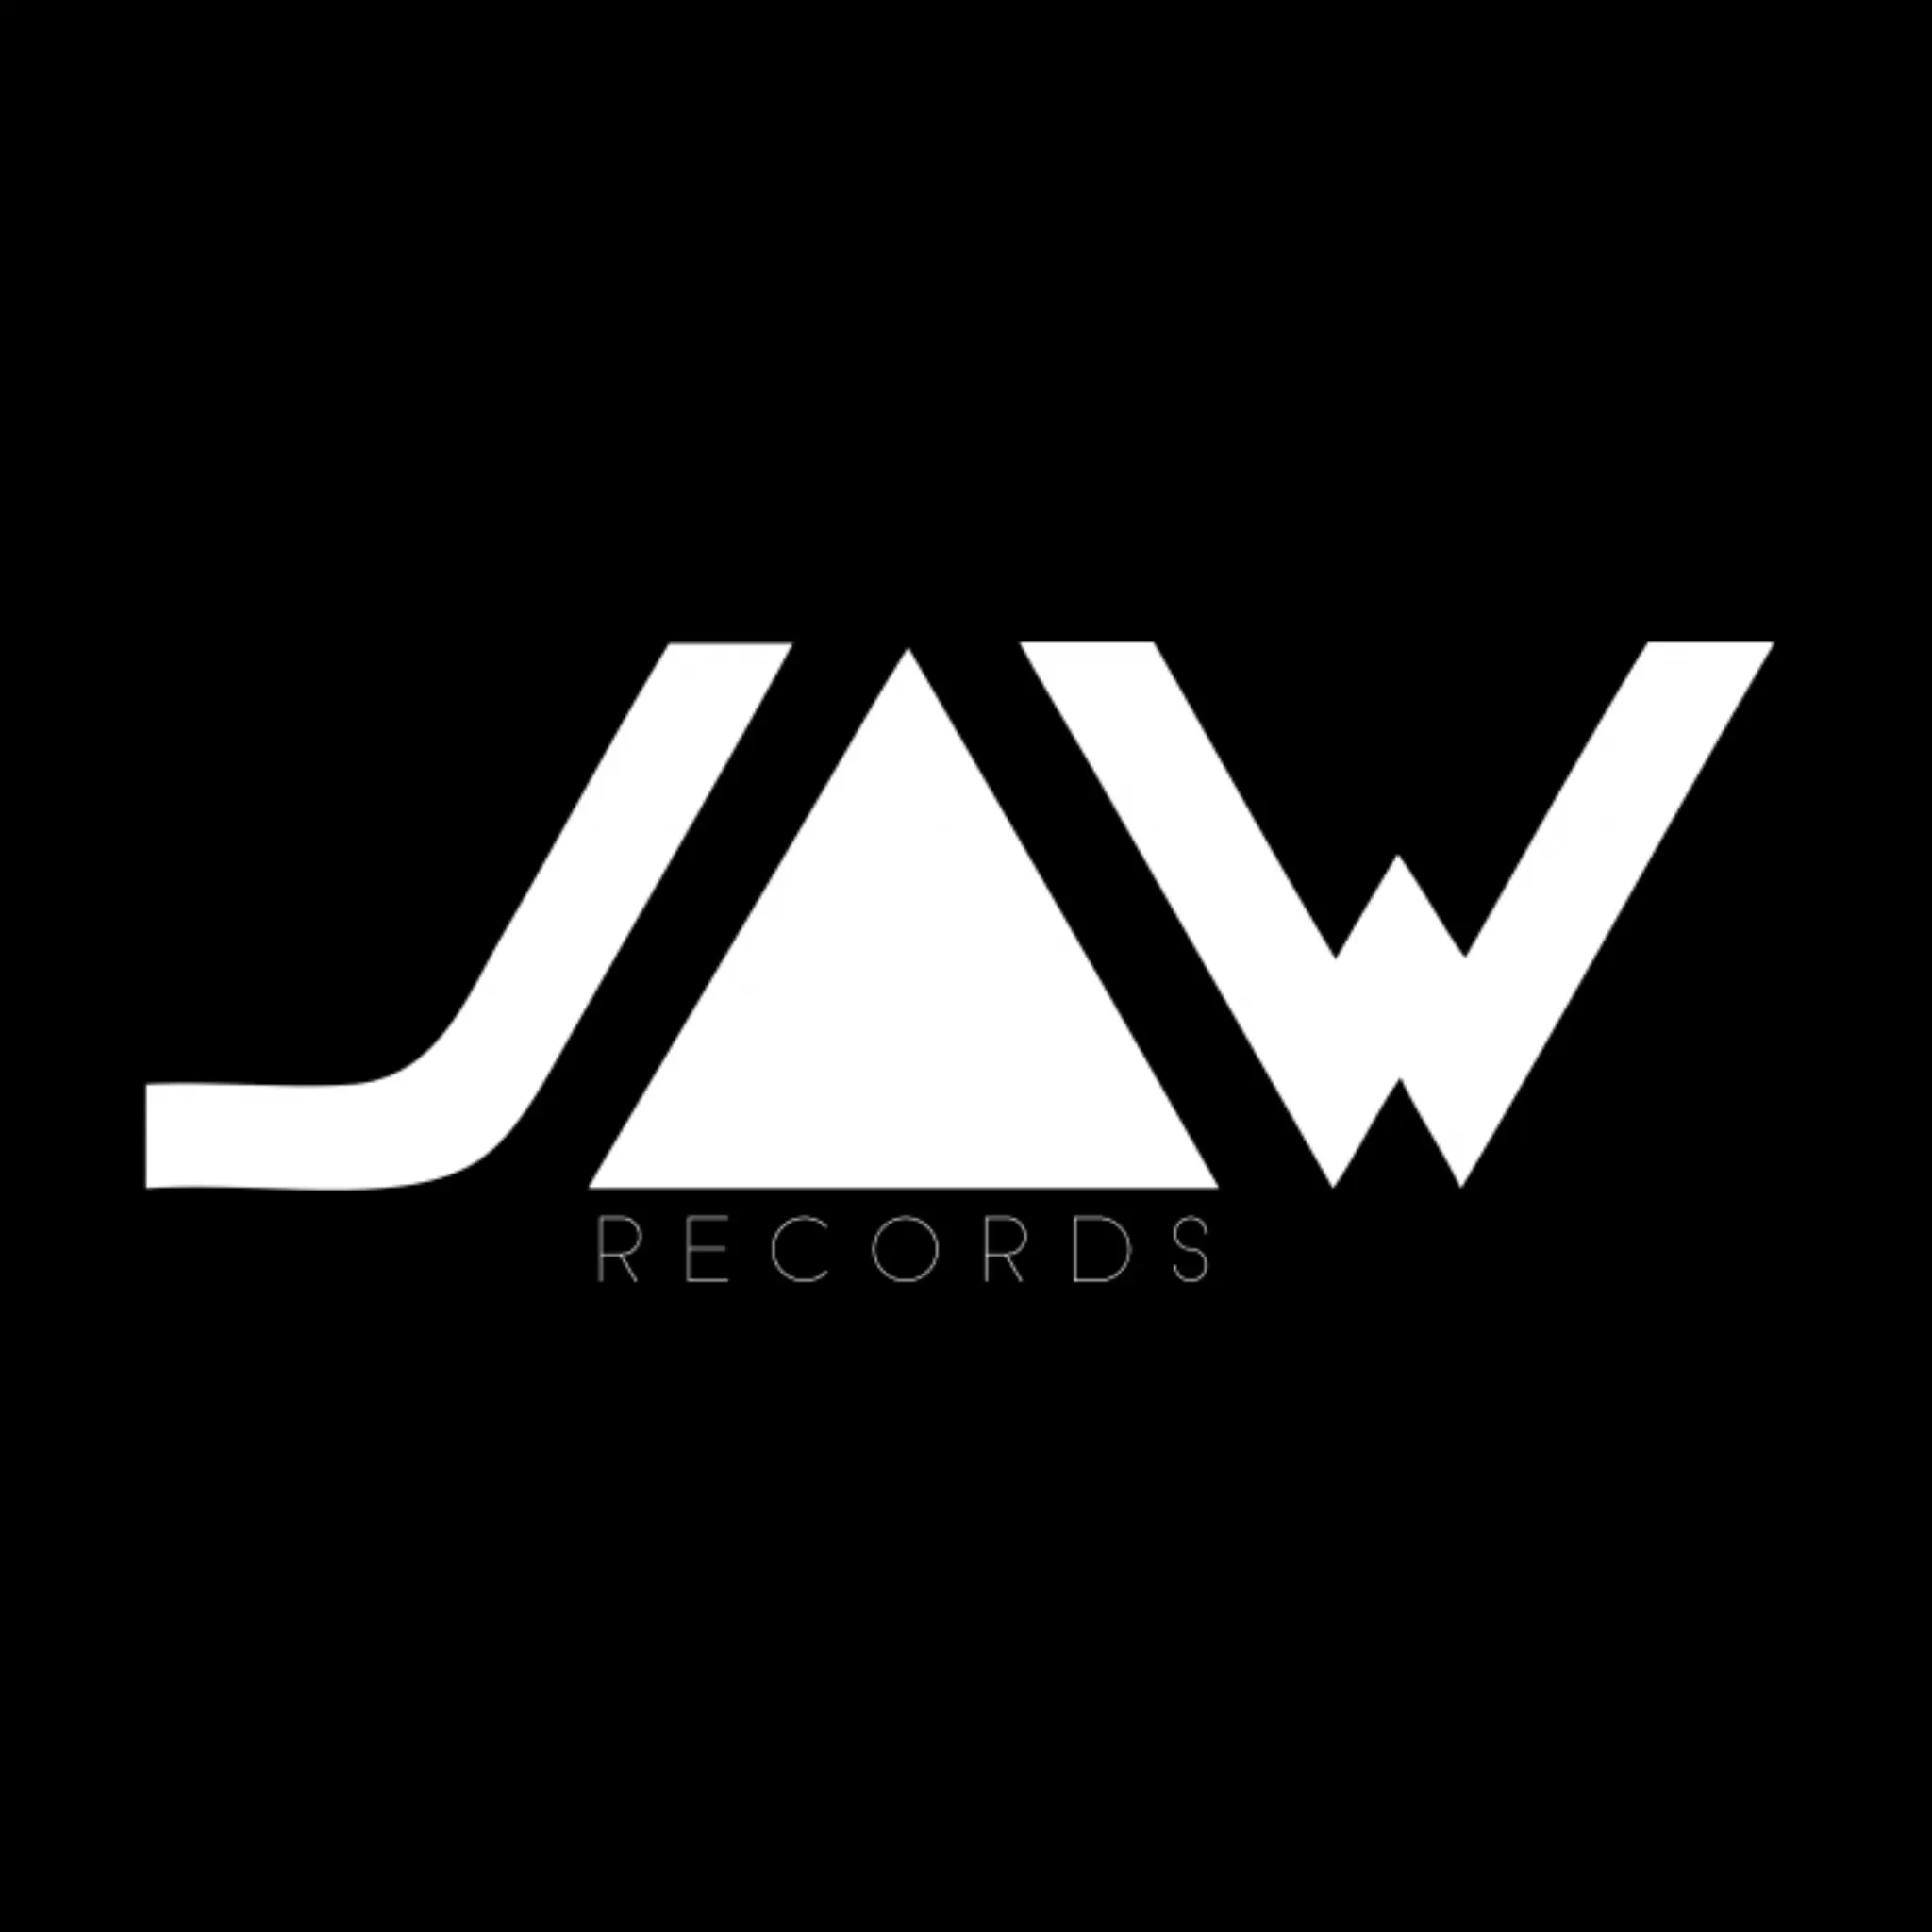 Jannowitz Records